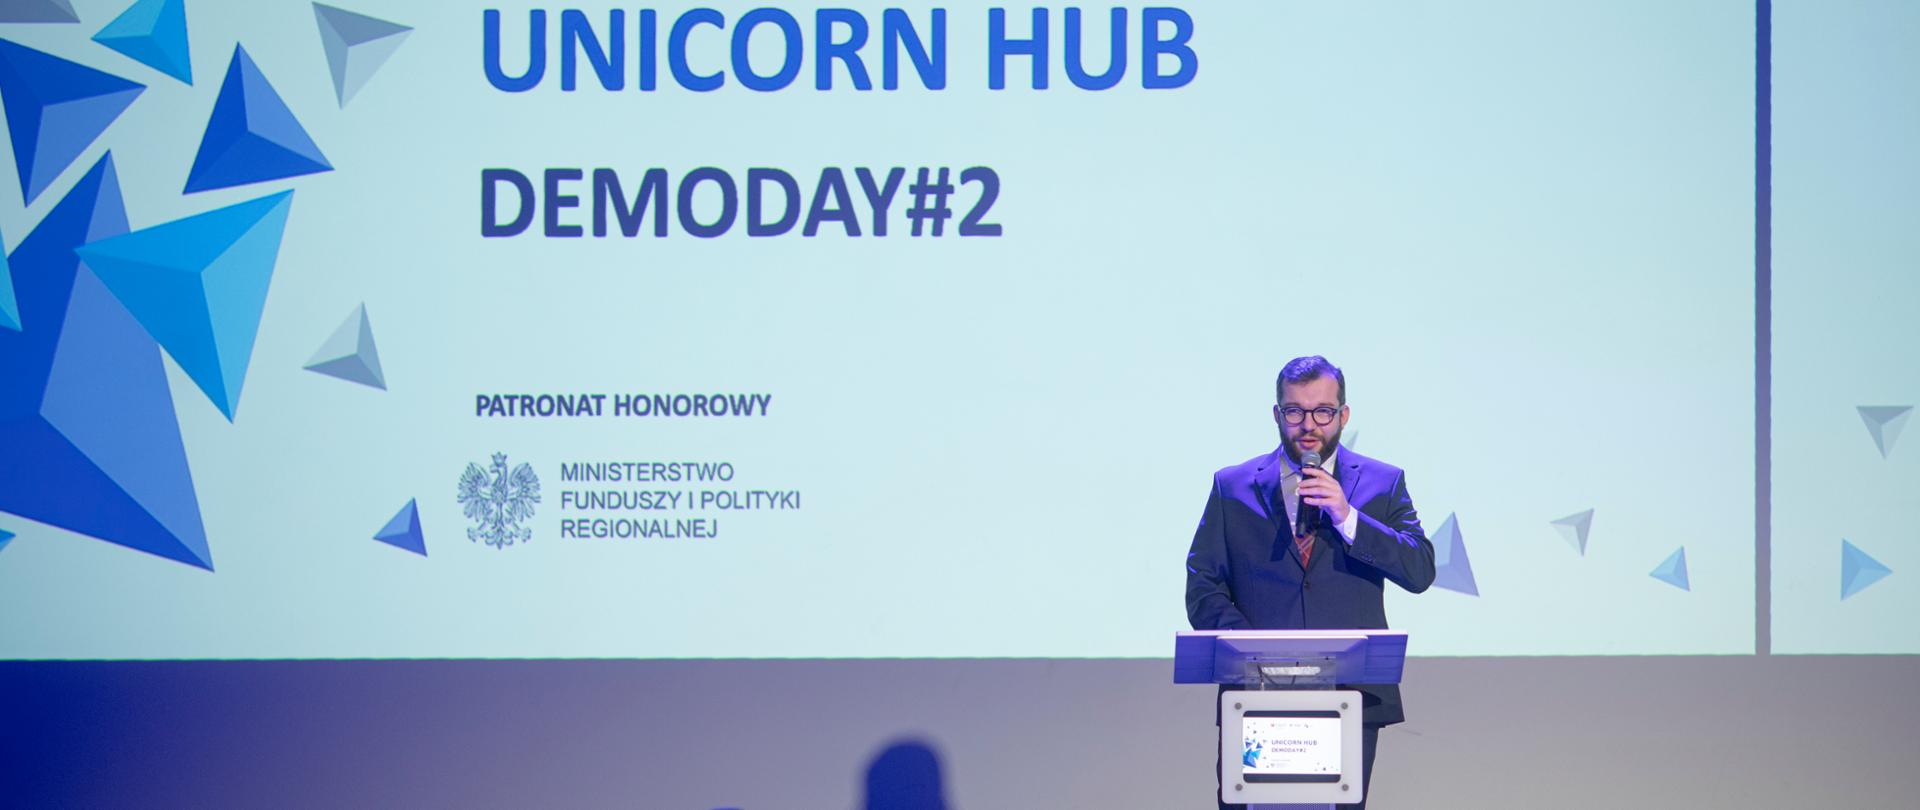 Na zdjęciu przy mównicy stoi wiceminister Grzegorz Puda, w tle jasny ekran z napisem Unicorn Hub DemoDay#2, z przodu osoby siedzące na widowni.